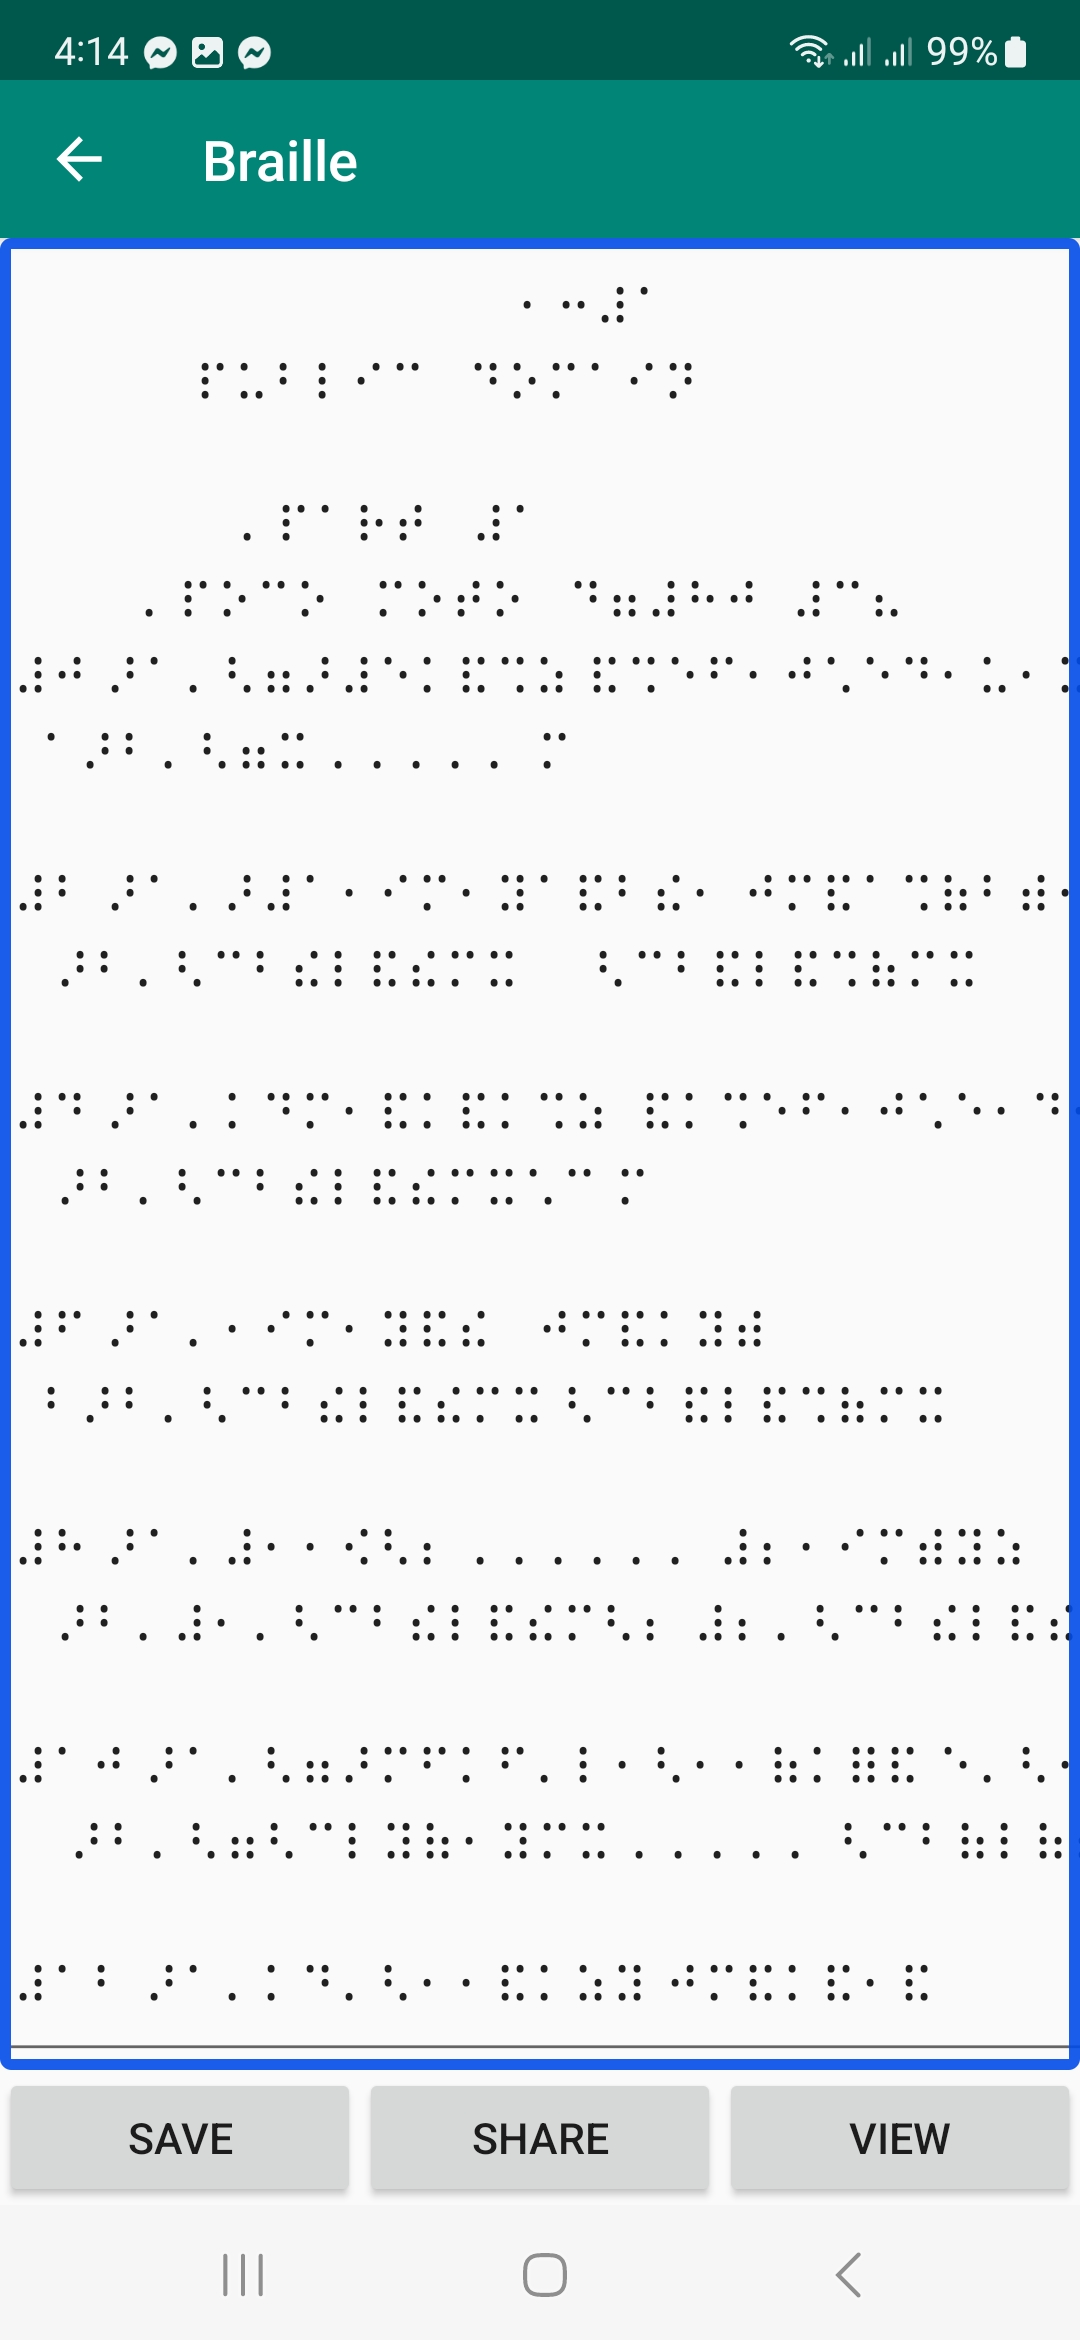 Fùr Elise score translated in Braille